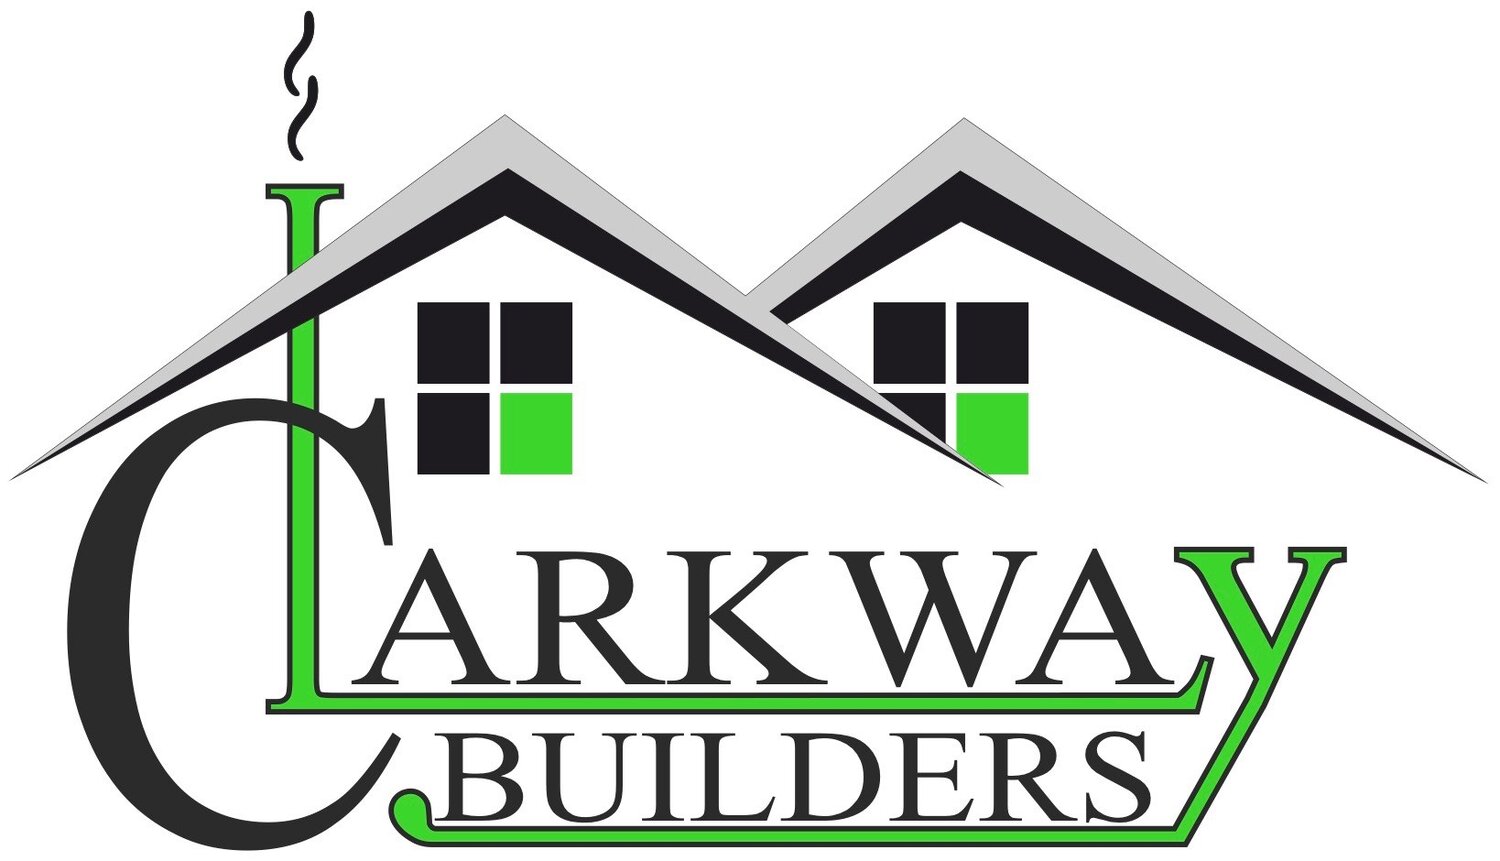 Clarkway Builders 